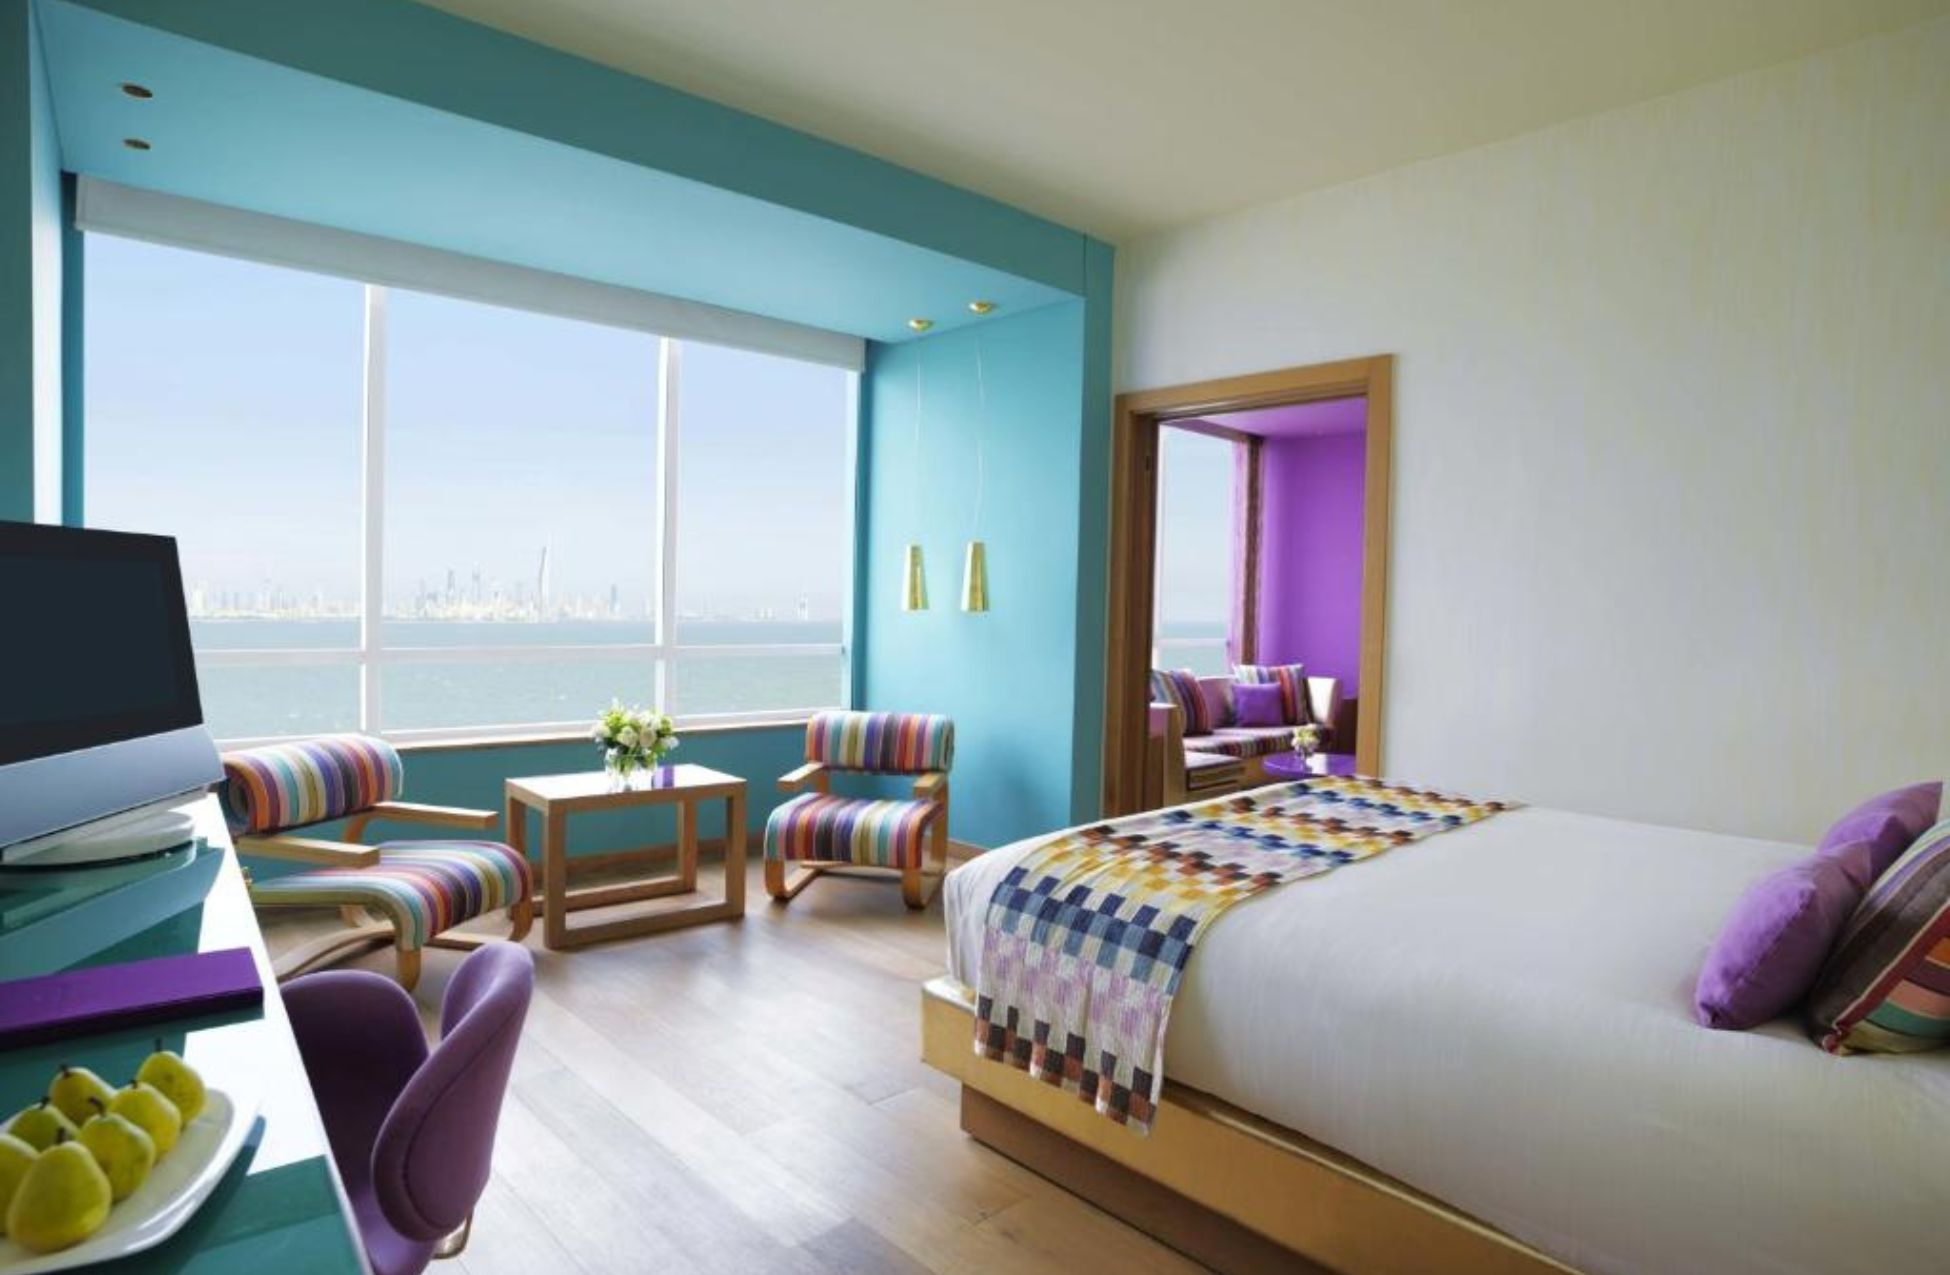 Symphony Style Hotel Kuwait - Best Hotels In Kuwait City